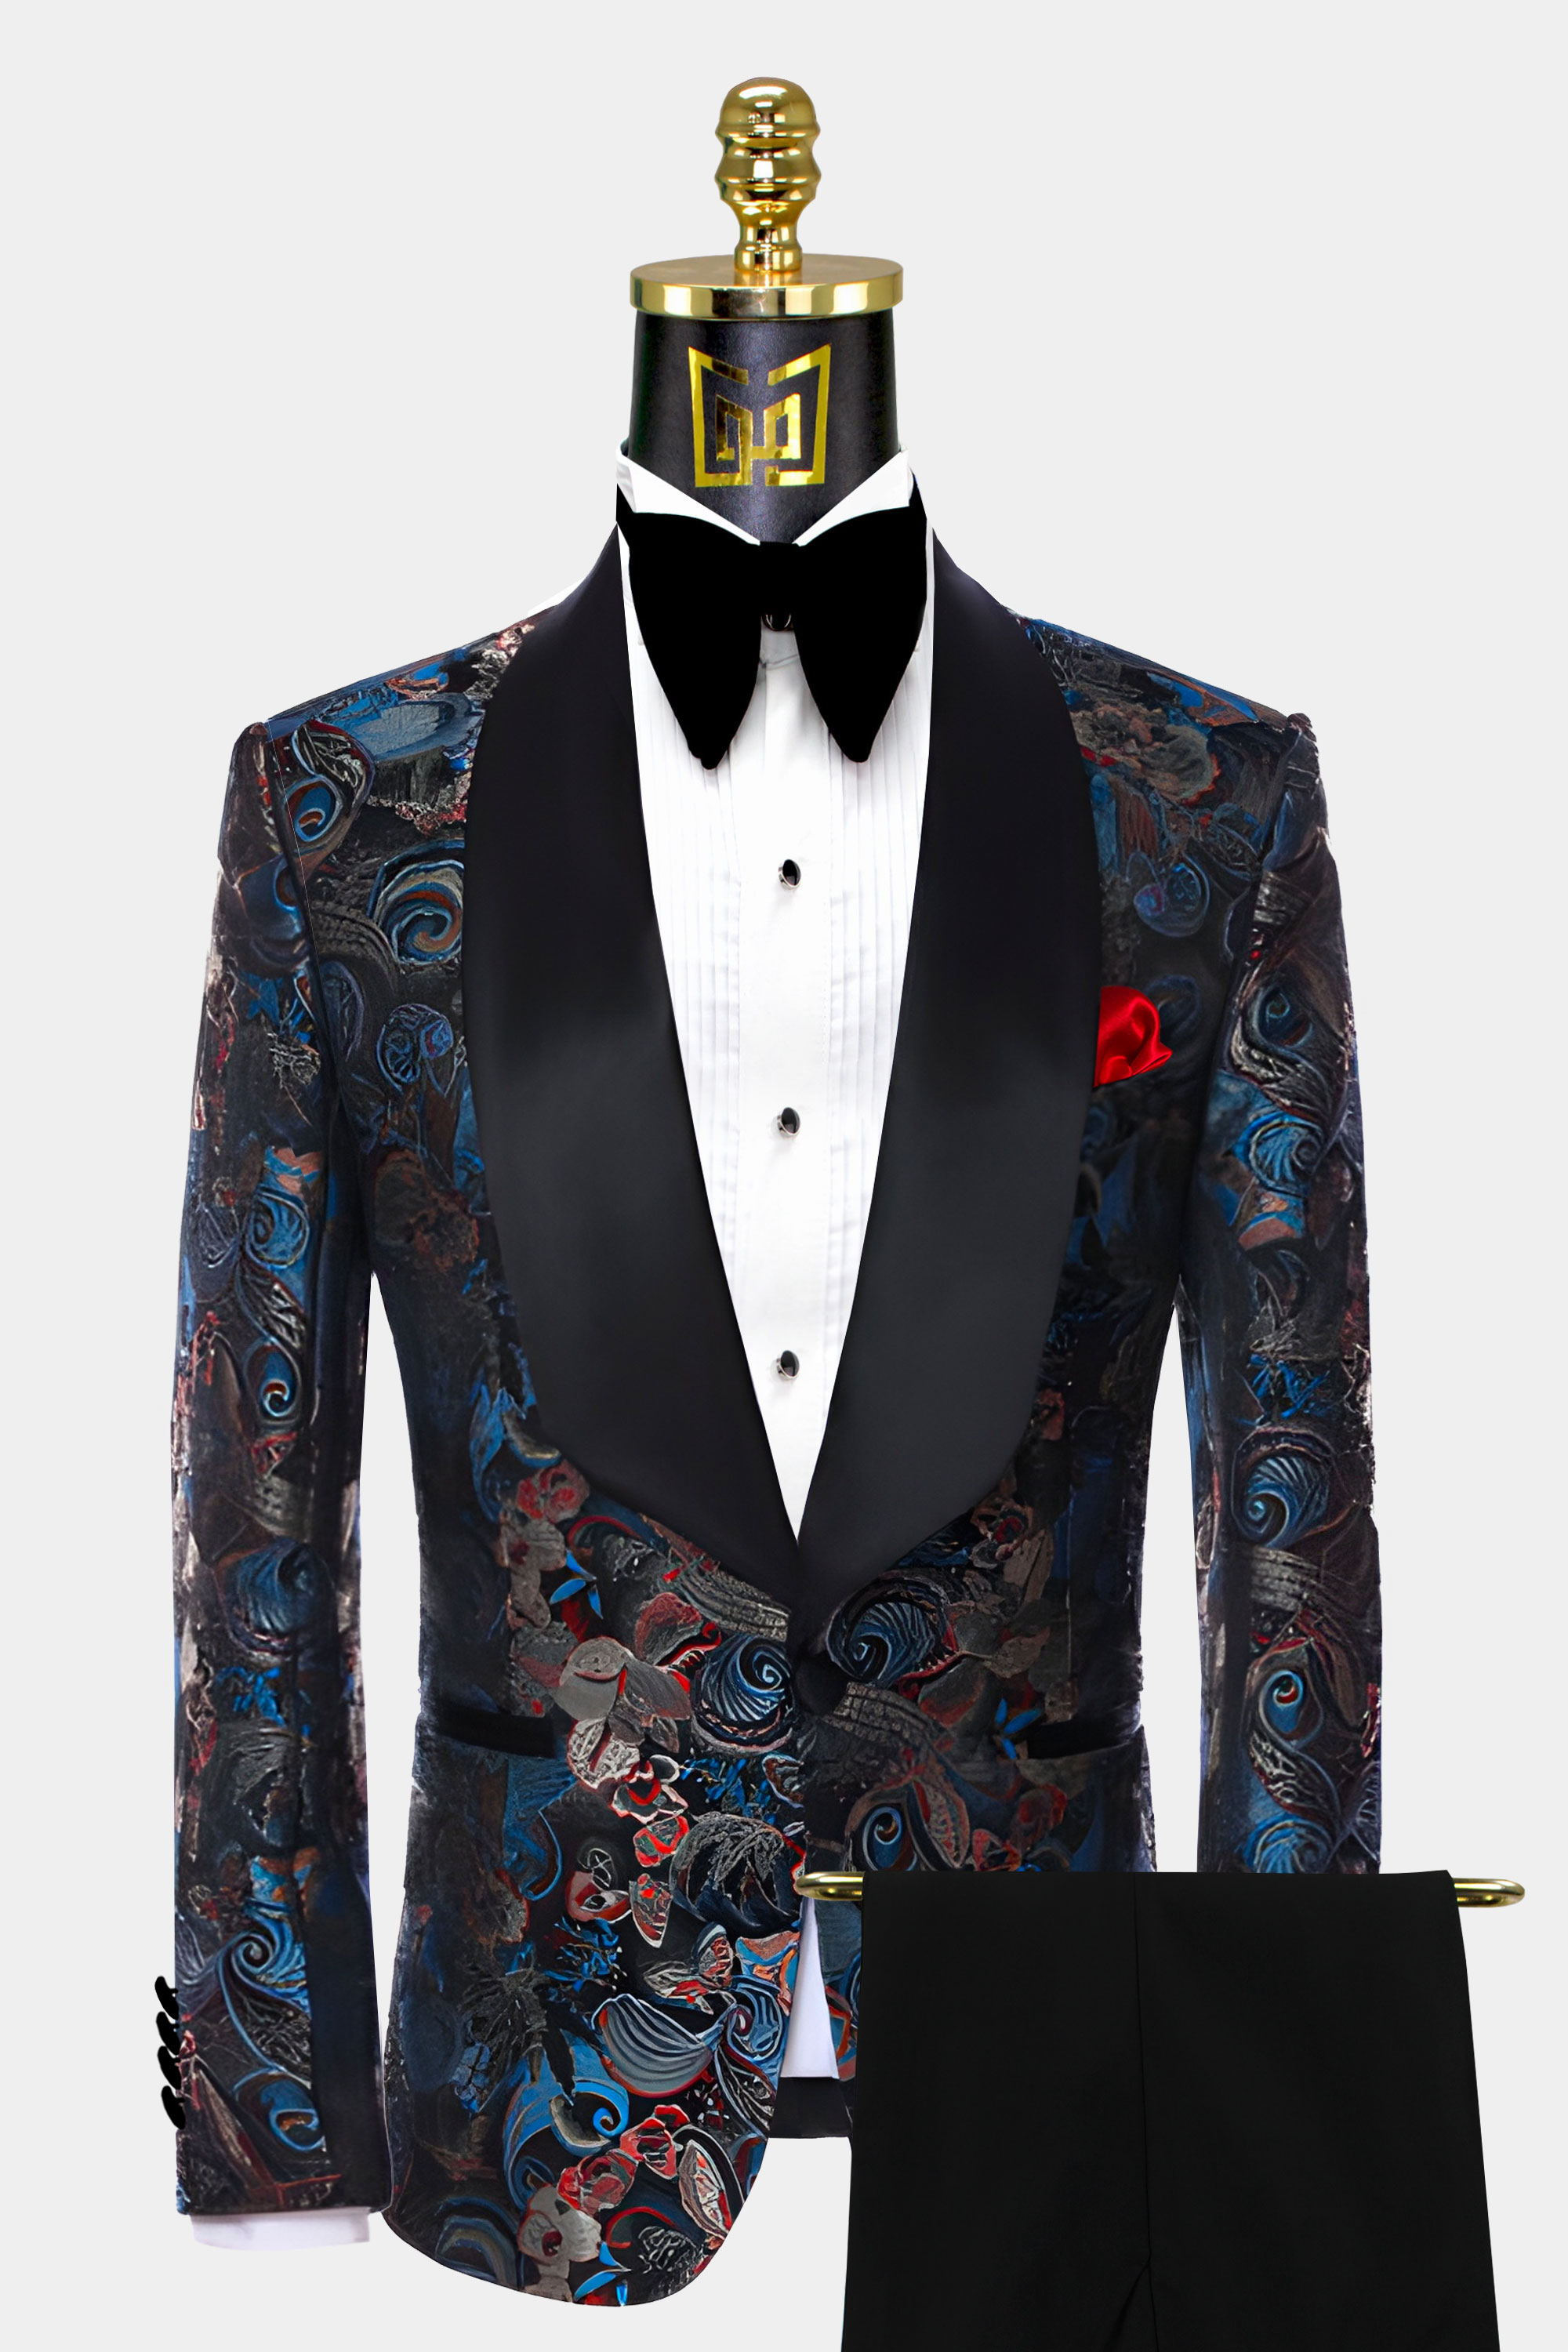 Mens-Embroidered-Tuxedo-Wedding-Groom-Prom-Suit-For-Men-from-Gentlemansguru.com